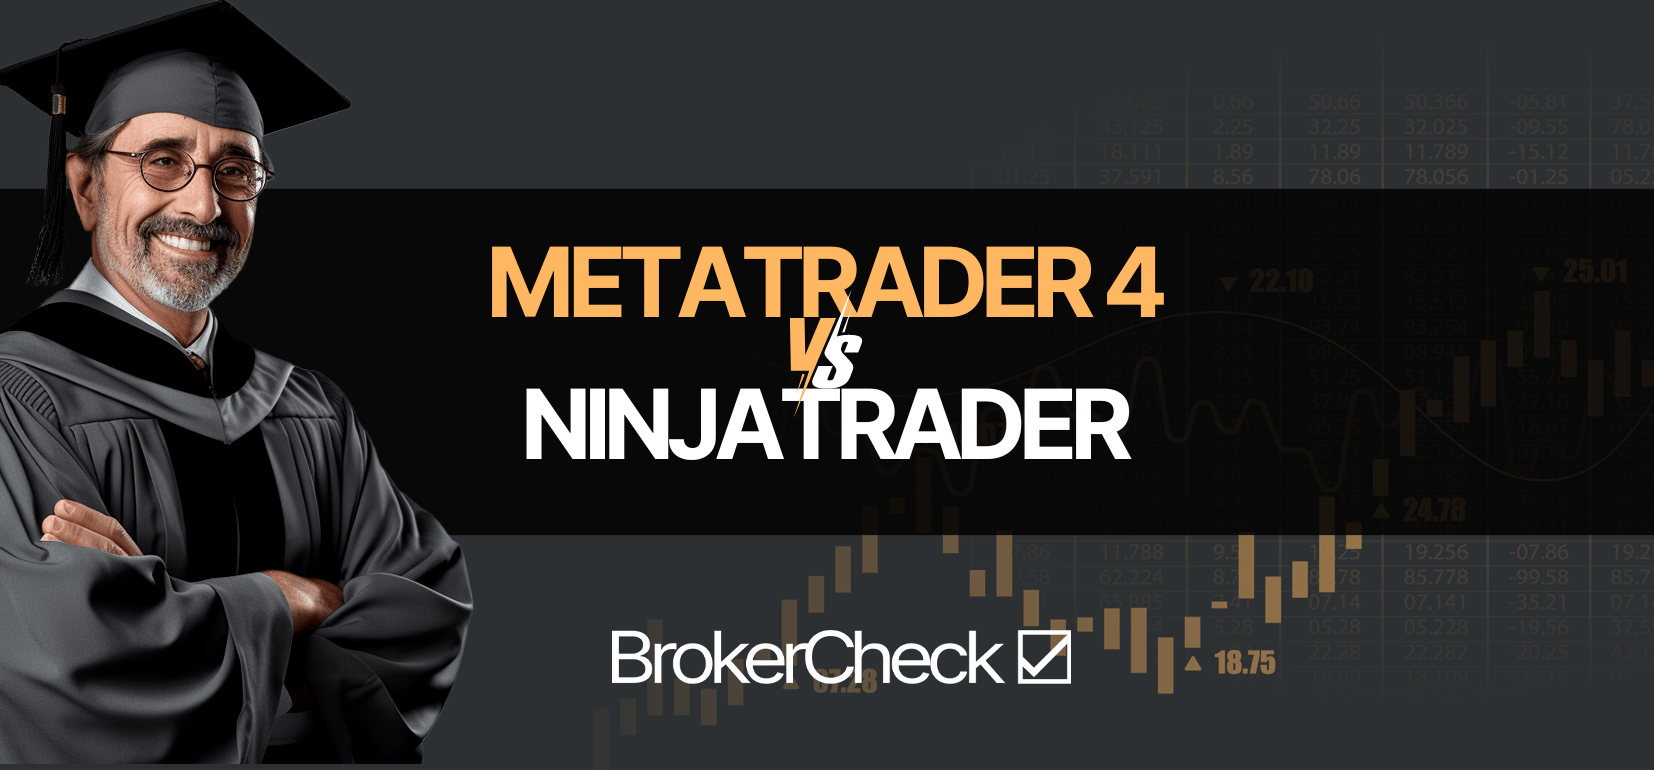 MetaTrader 4 Vs NinjaTrader